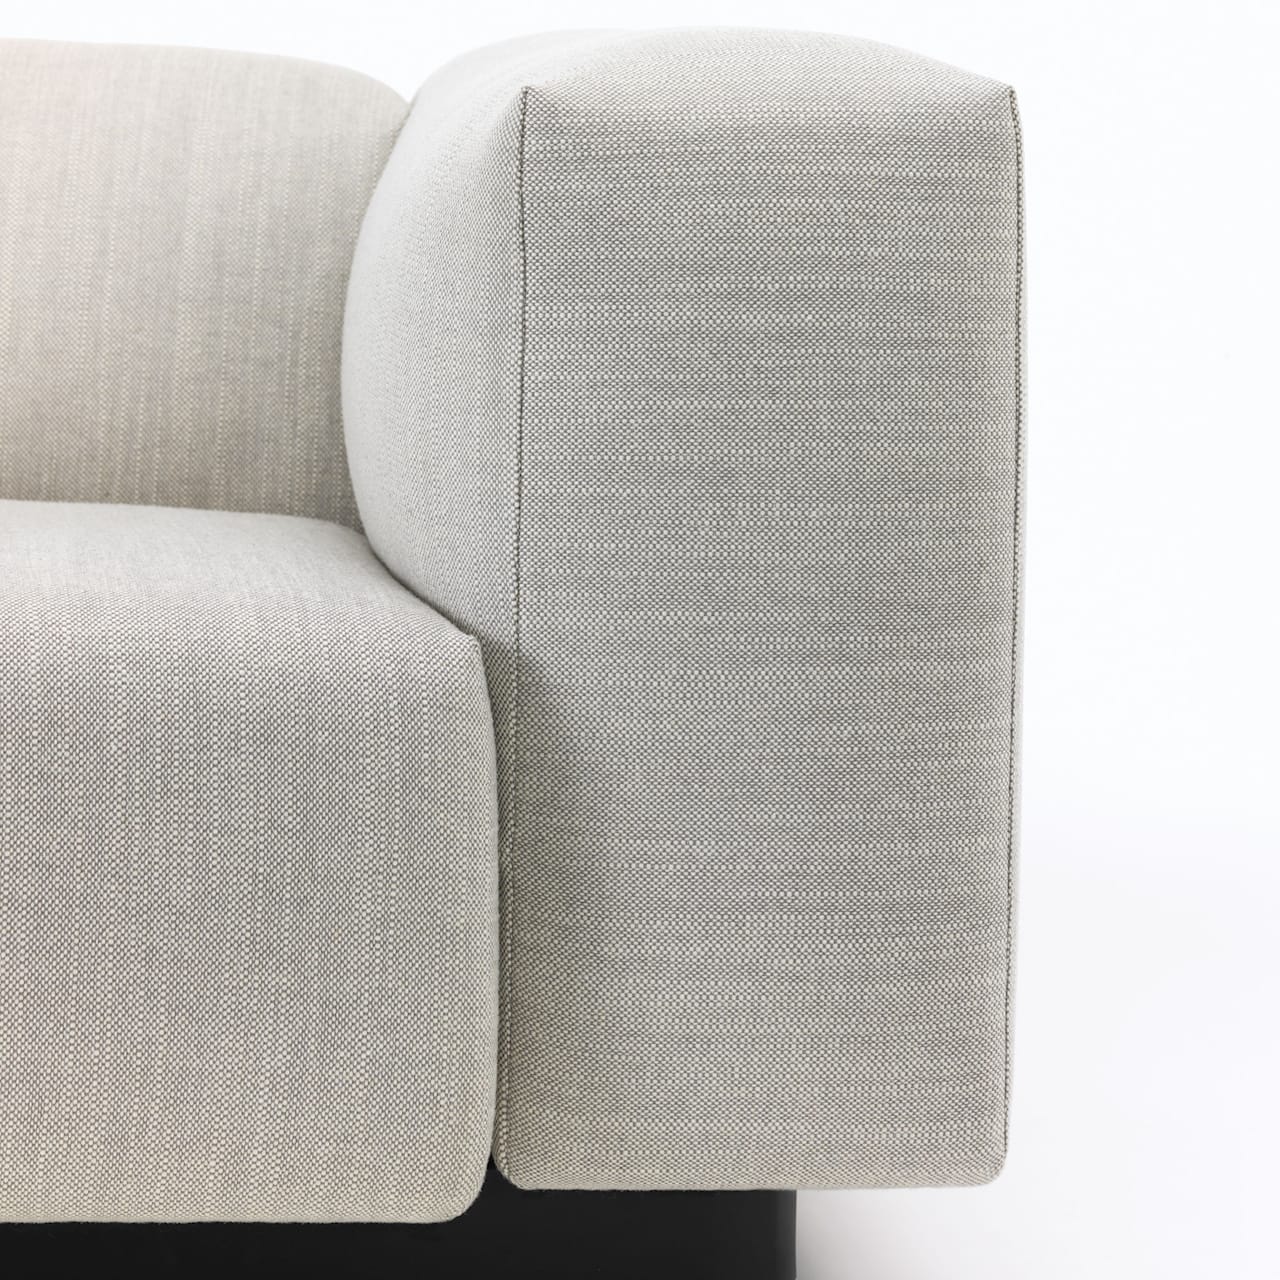 Soft Modular Sofa - 3 sæder